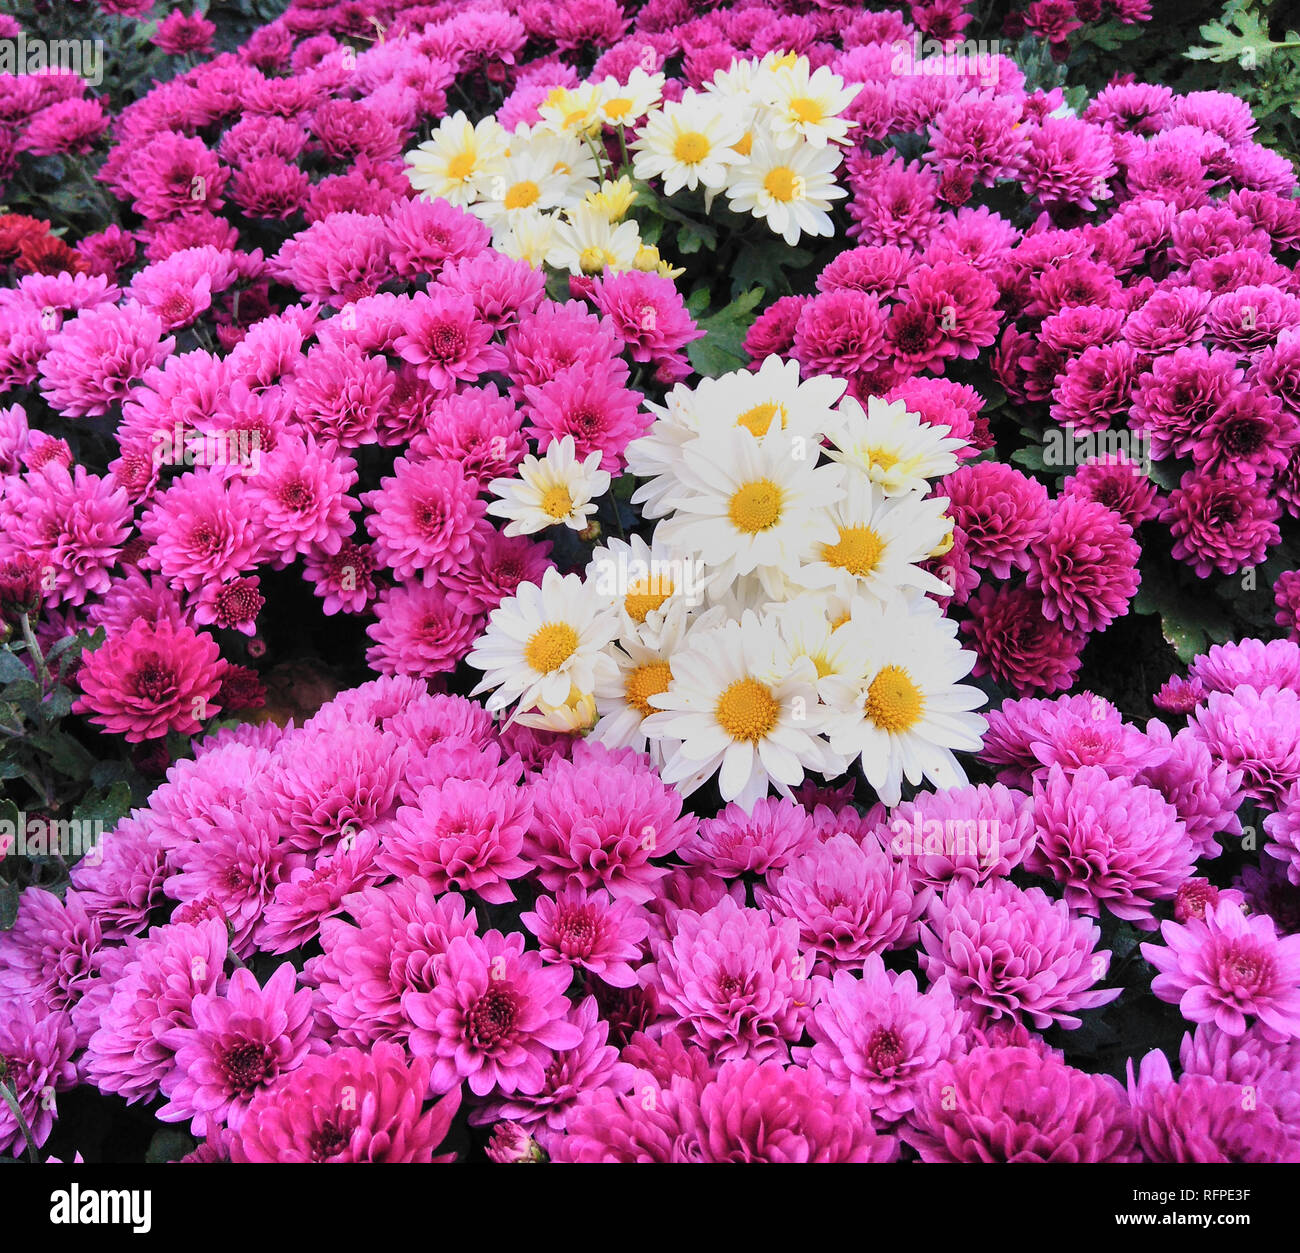 Mixed Purple Chrysanthemum White Daisy Flowers Background Stock Photo